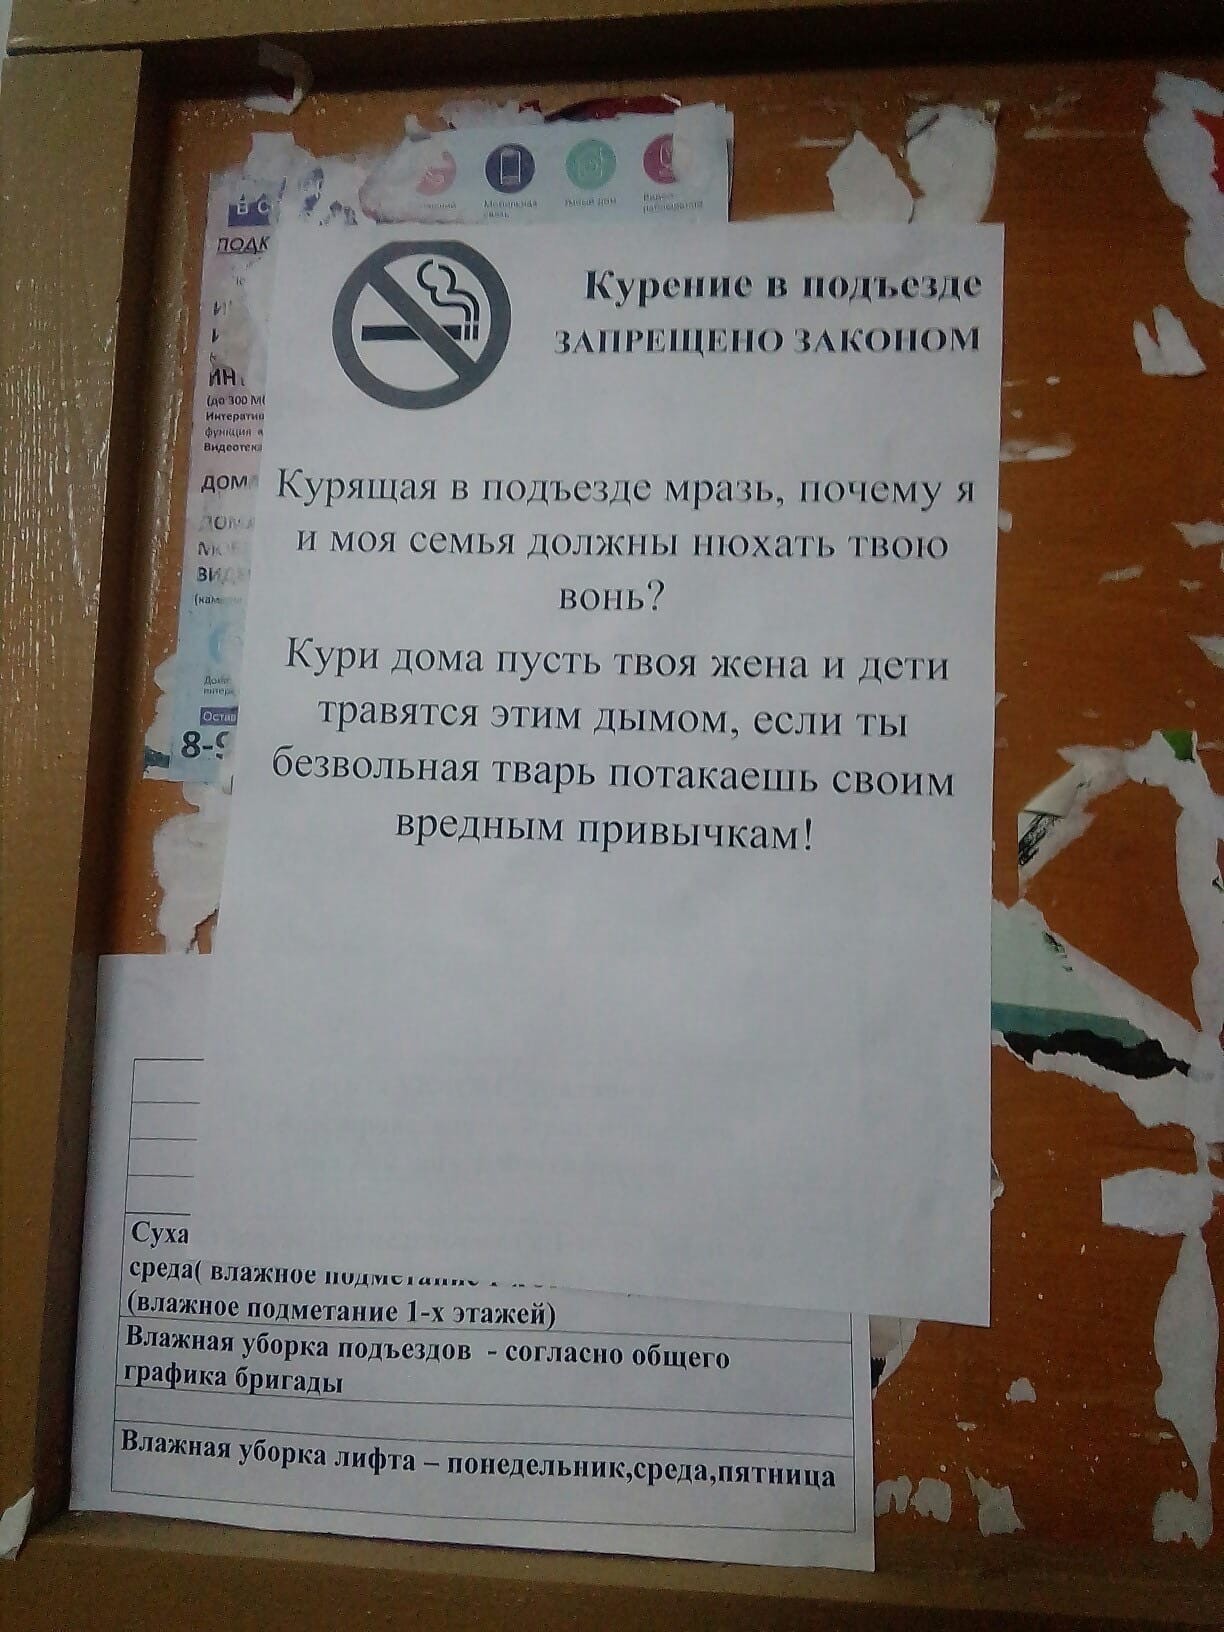 Курящий сосед снизу что делать. Объявления в подъезде. Обращение к курящим соседям в подъезде. Объявление не курить в подъезде. Объявление для курильщиков в подъезде.